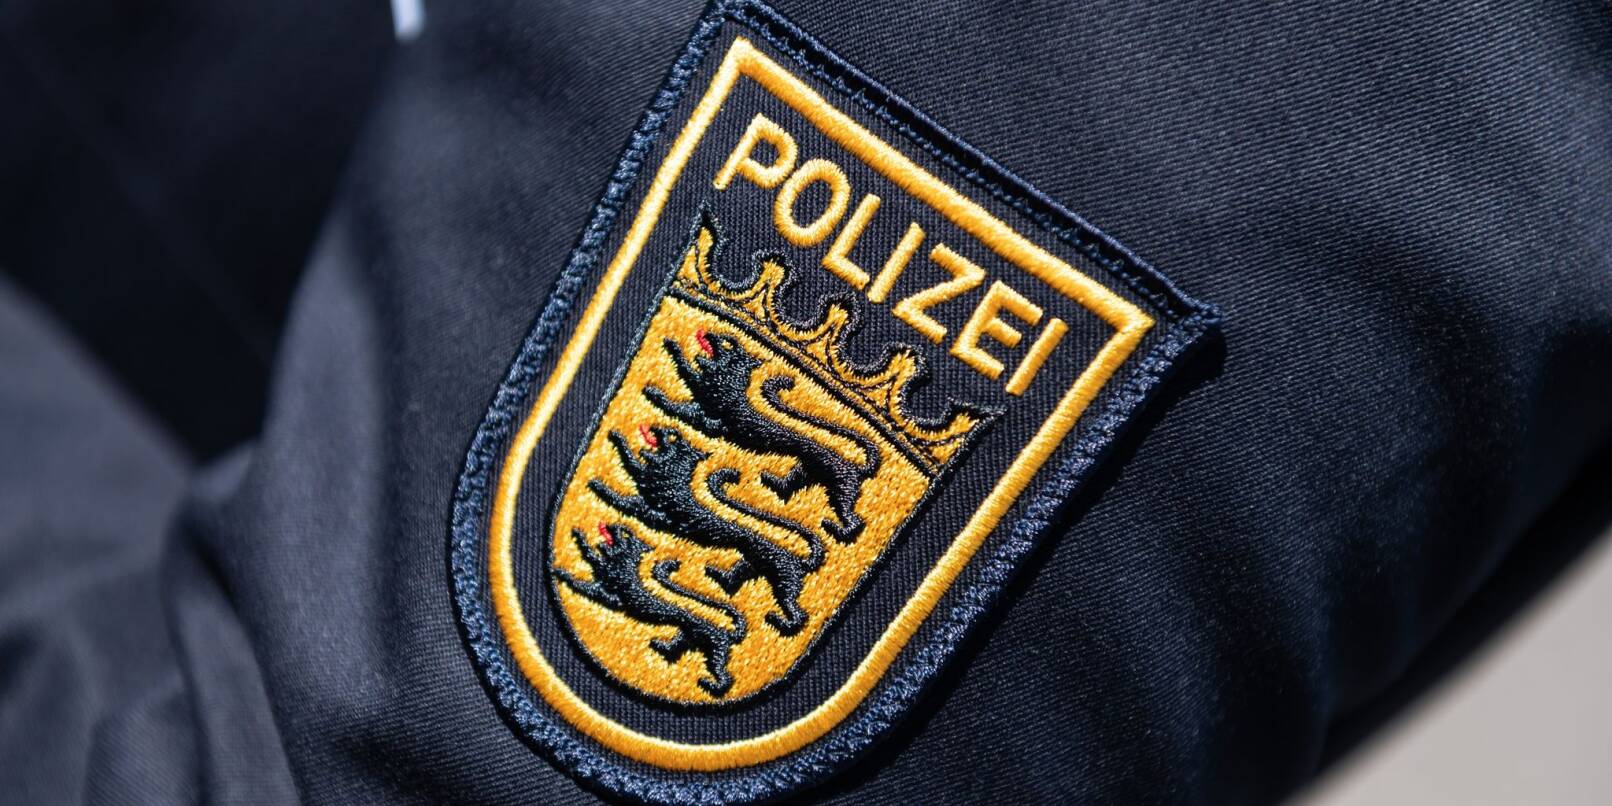 Das Landeskriminalamt Baden-Württemberg will gemeinsam mit der Polizei die Kriminalität in den Griff bekommen.